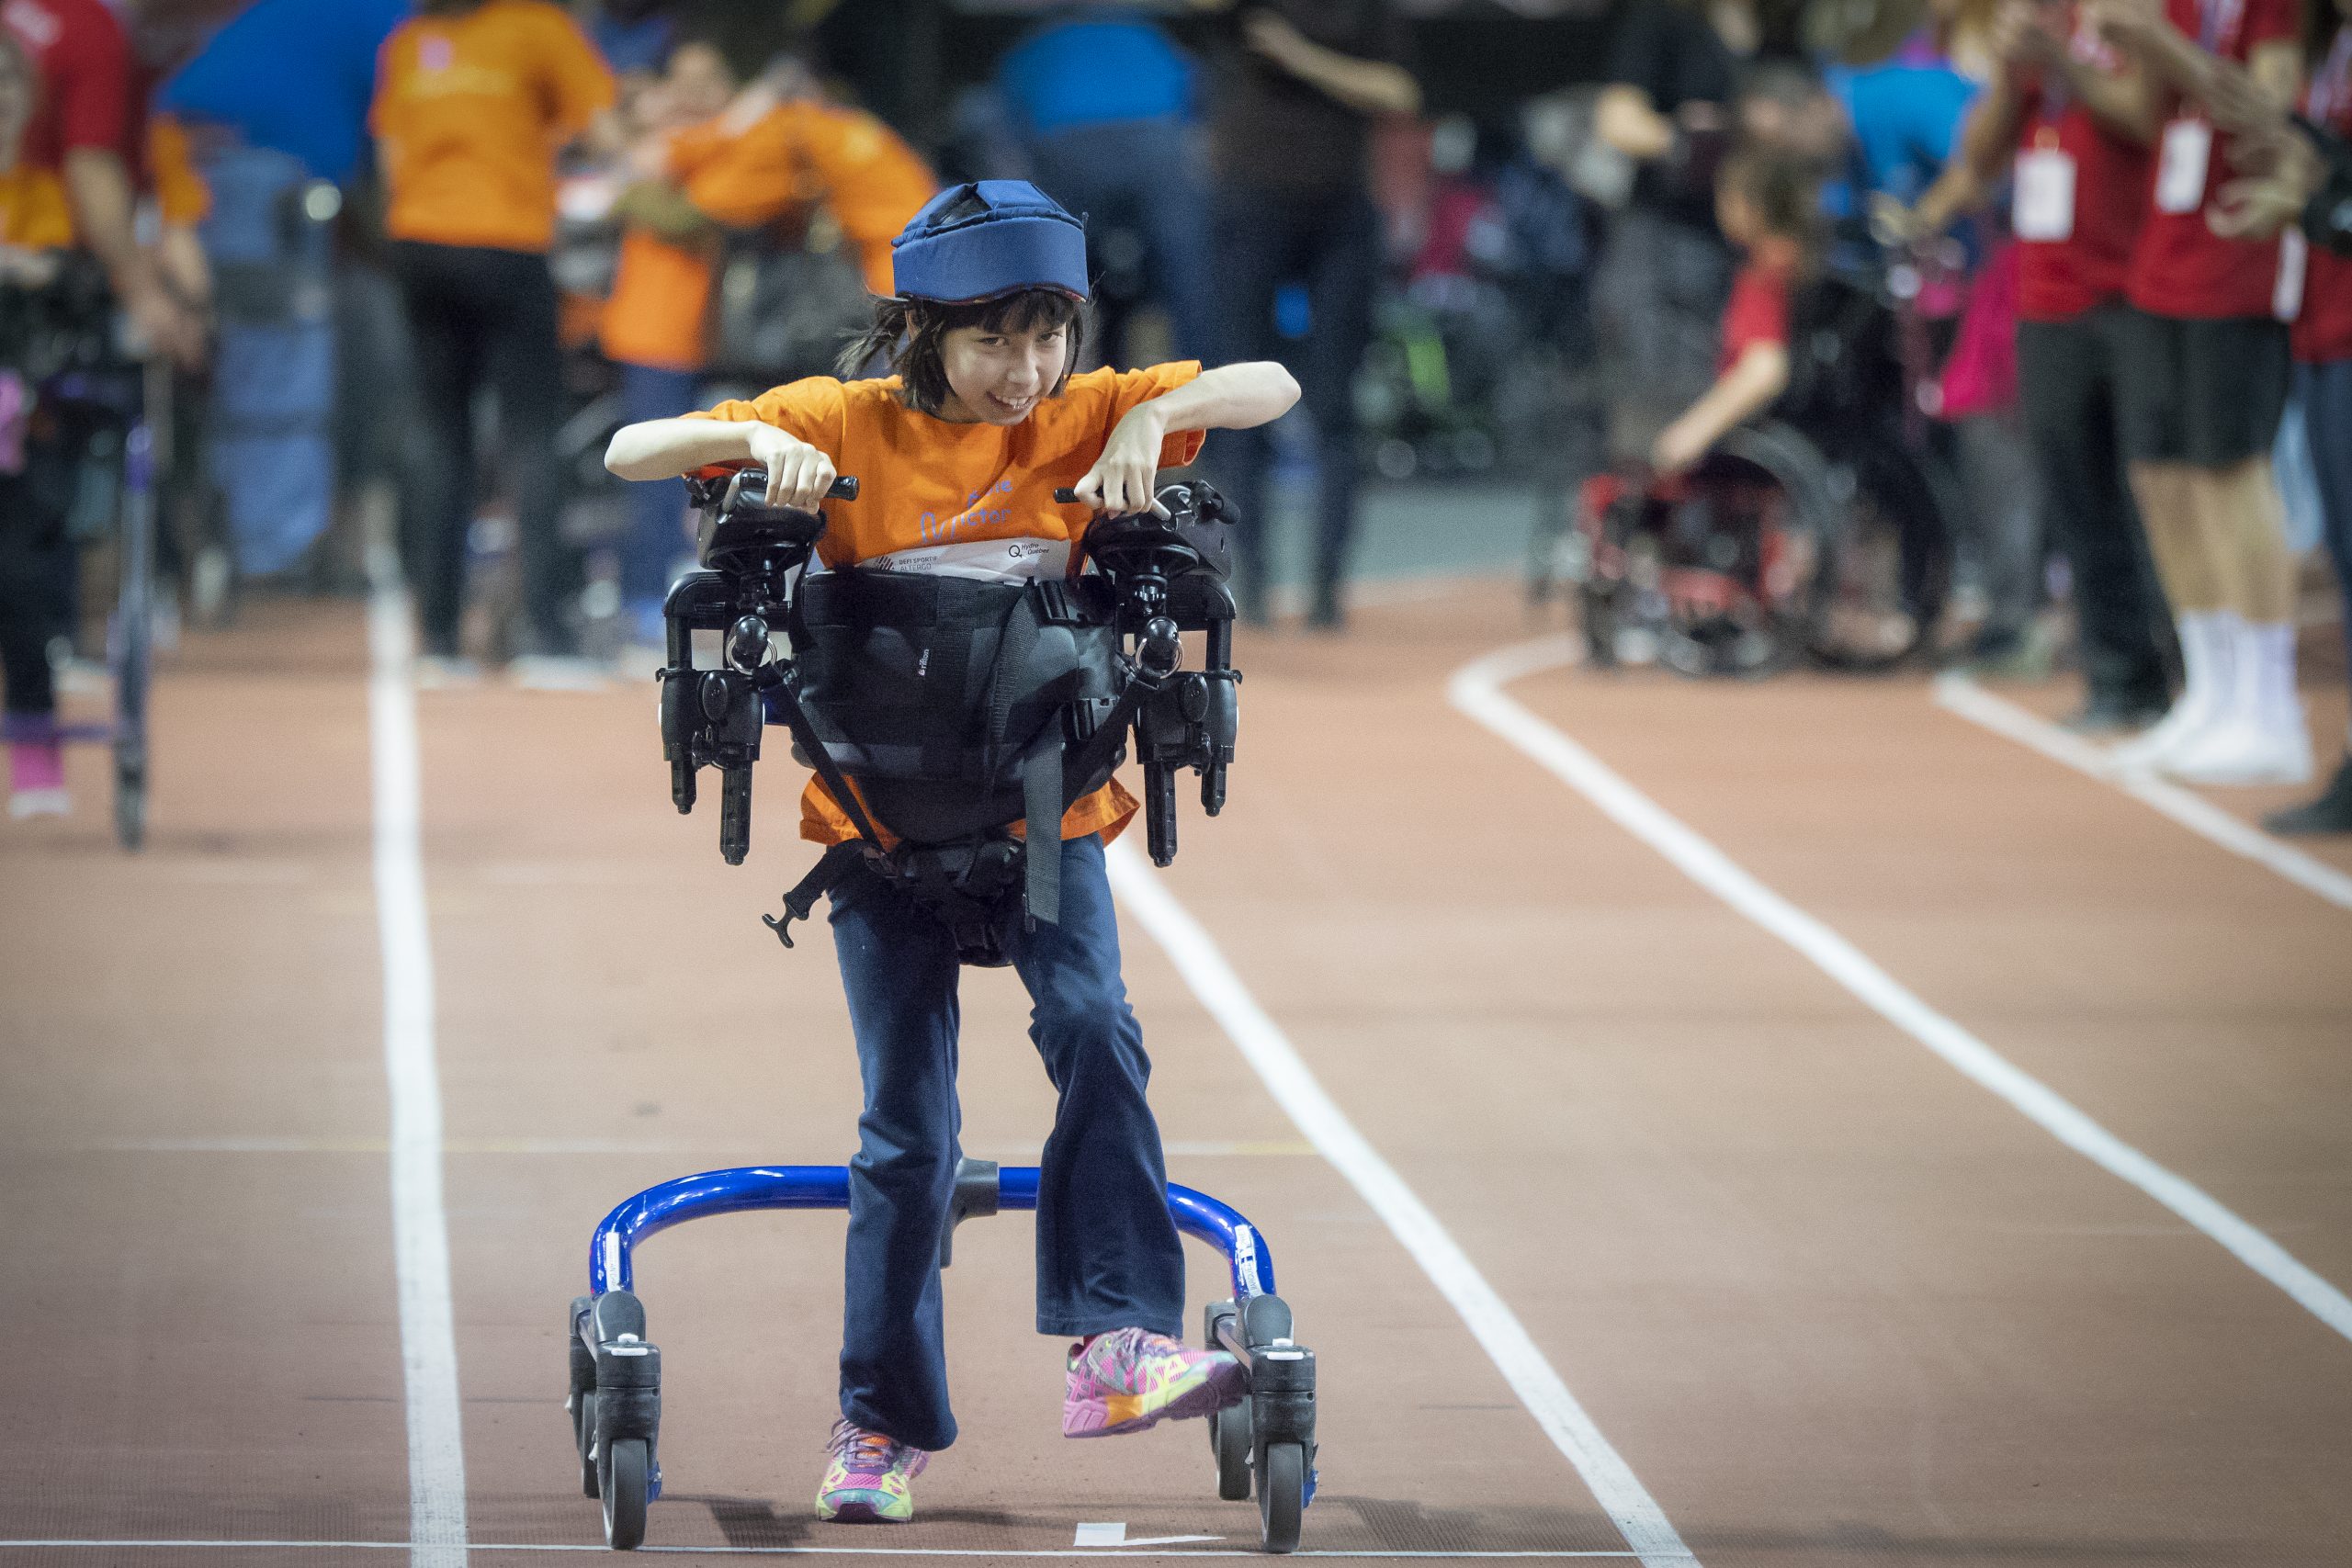 Athlétisme primaire avec handicap physique